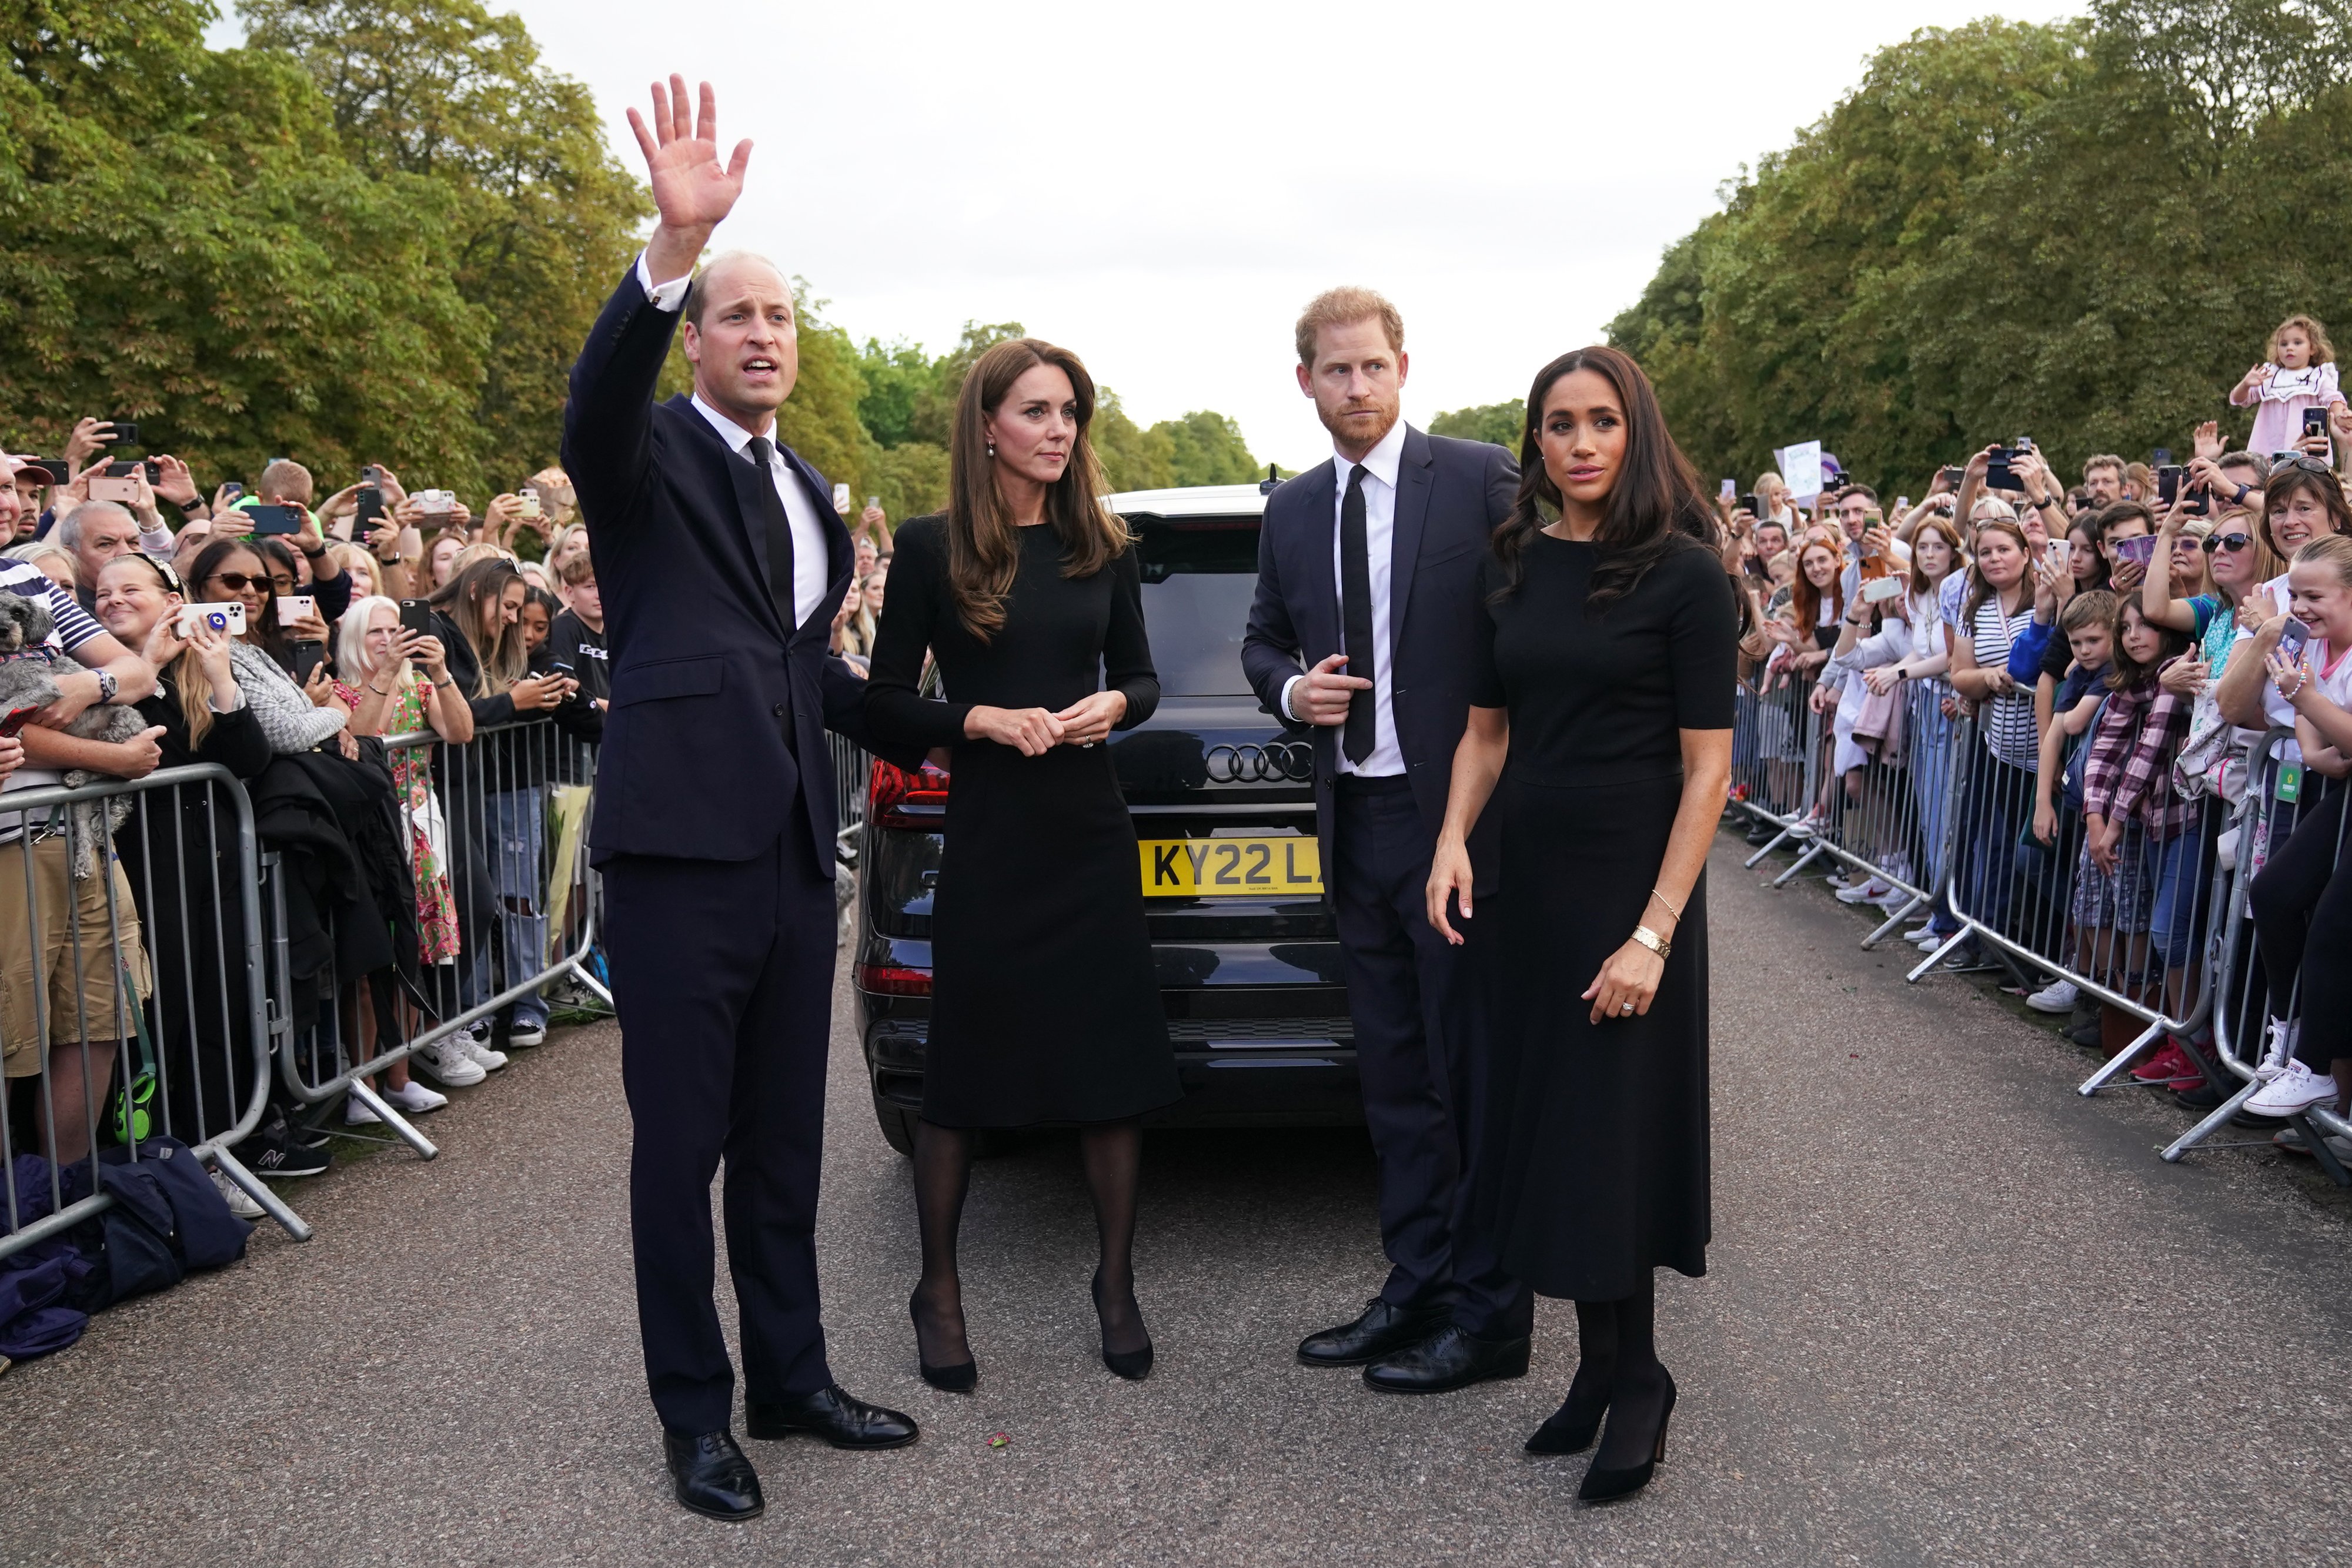 Catherine, princesa de Gales, el príncipe William, príncipe de Gales, el príncipe Harry, duque de Sussex y Meghan, duquesa de Sussex, se reunieron con el público en Long Walk en el castillo de Windsor, el 10 de septiembre de 2022, en Windsor, Inglaterra. | Foto: Getty Images